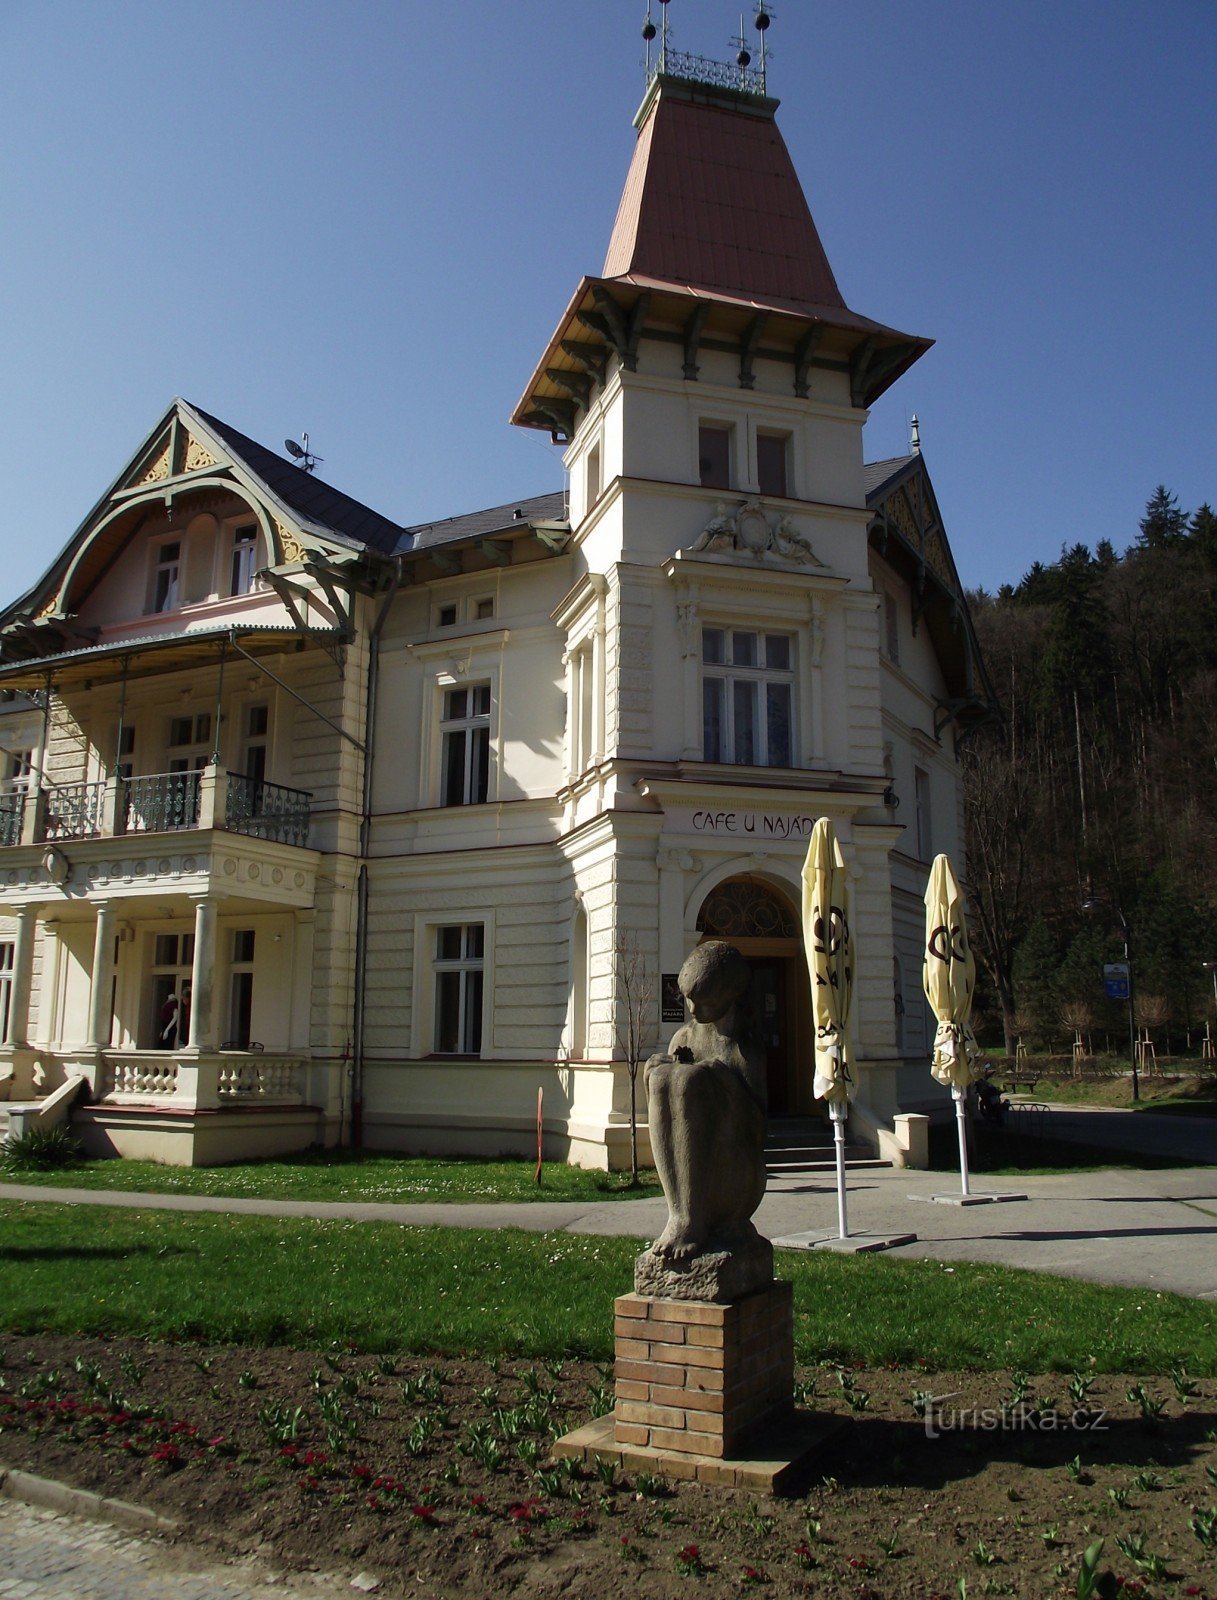 Luhačovice - Villa com farmácia (Villa Austria, U Najády)